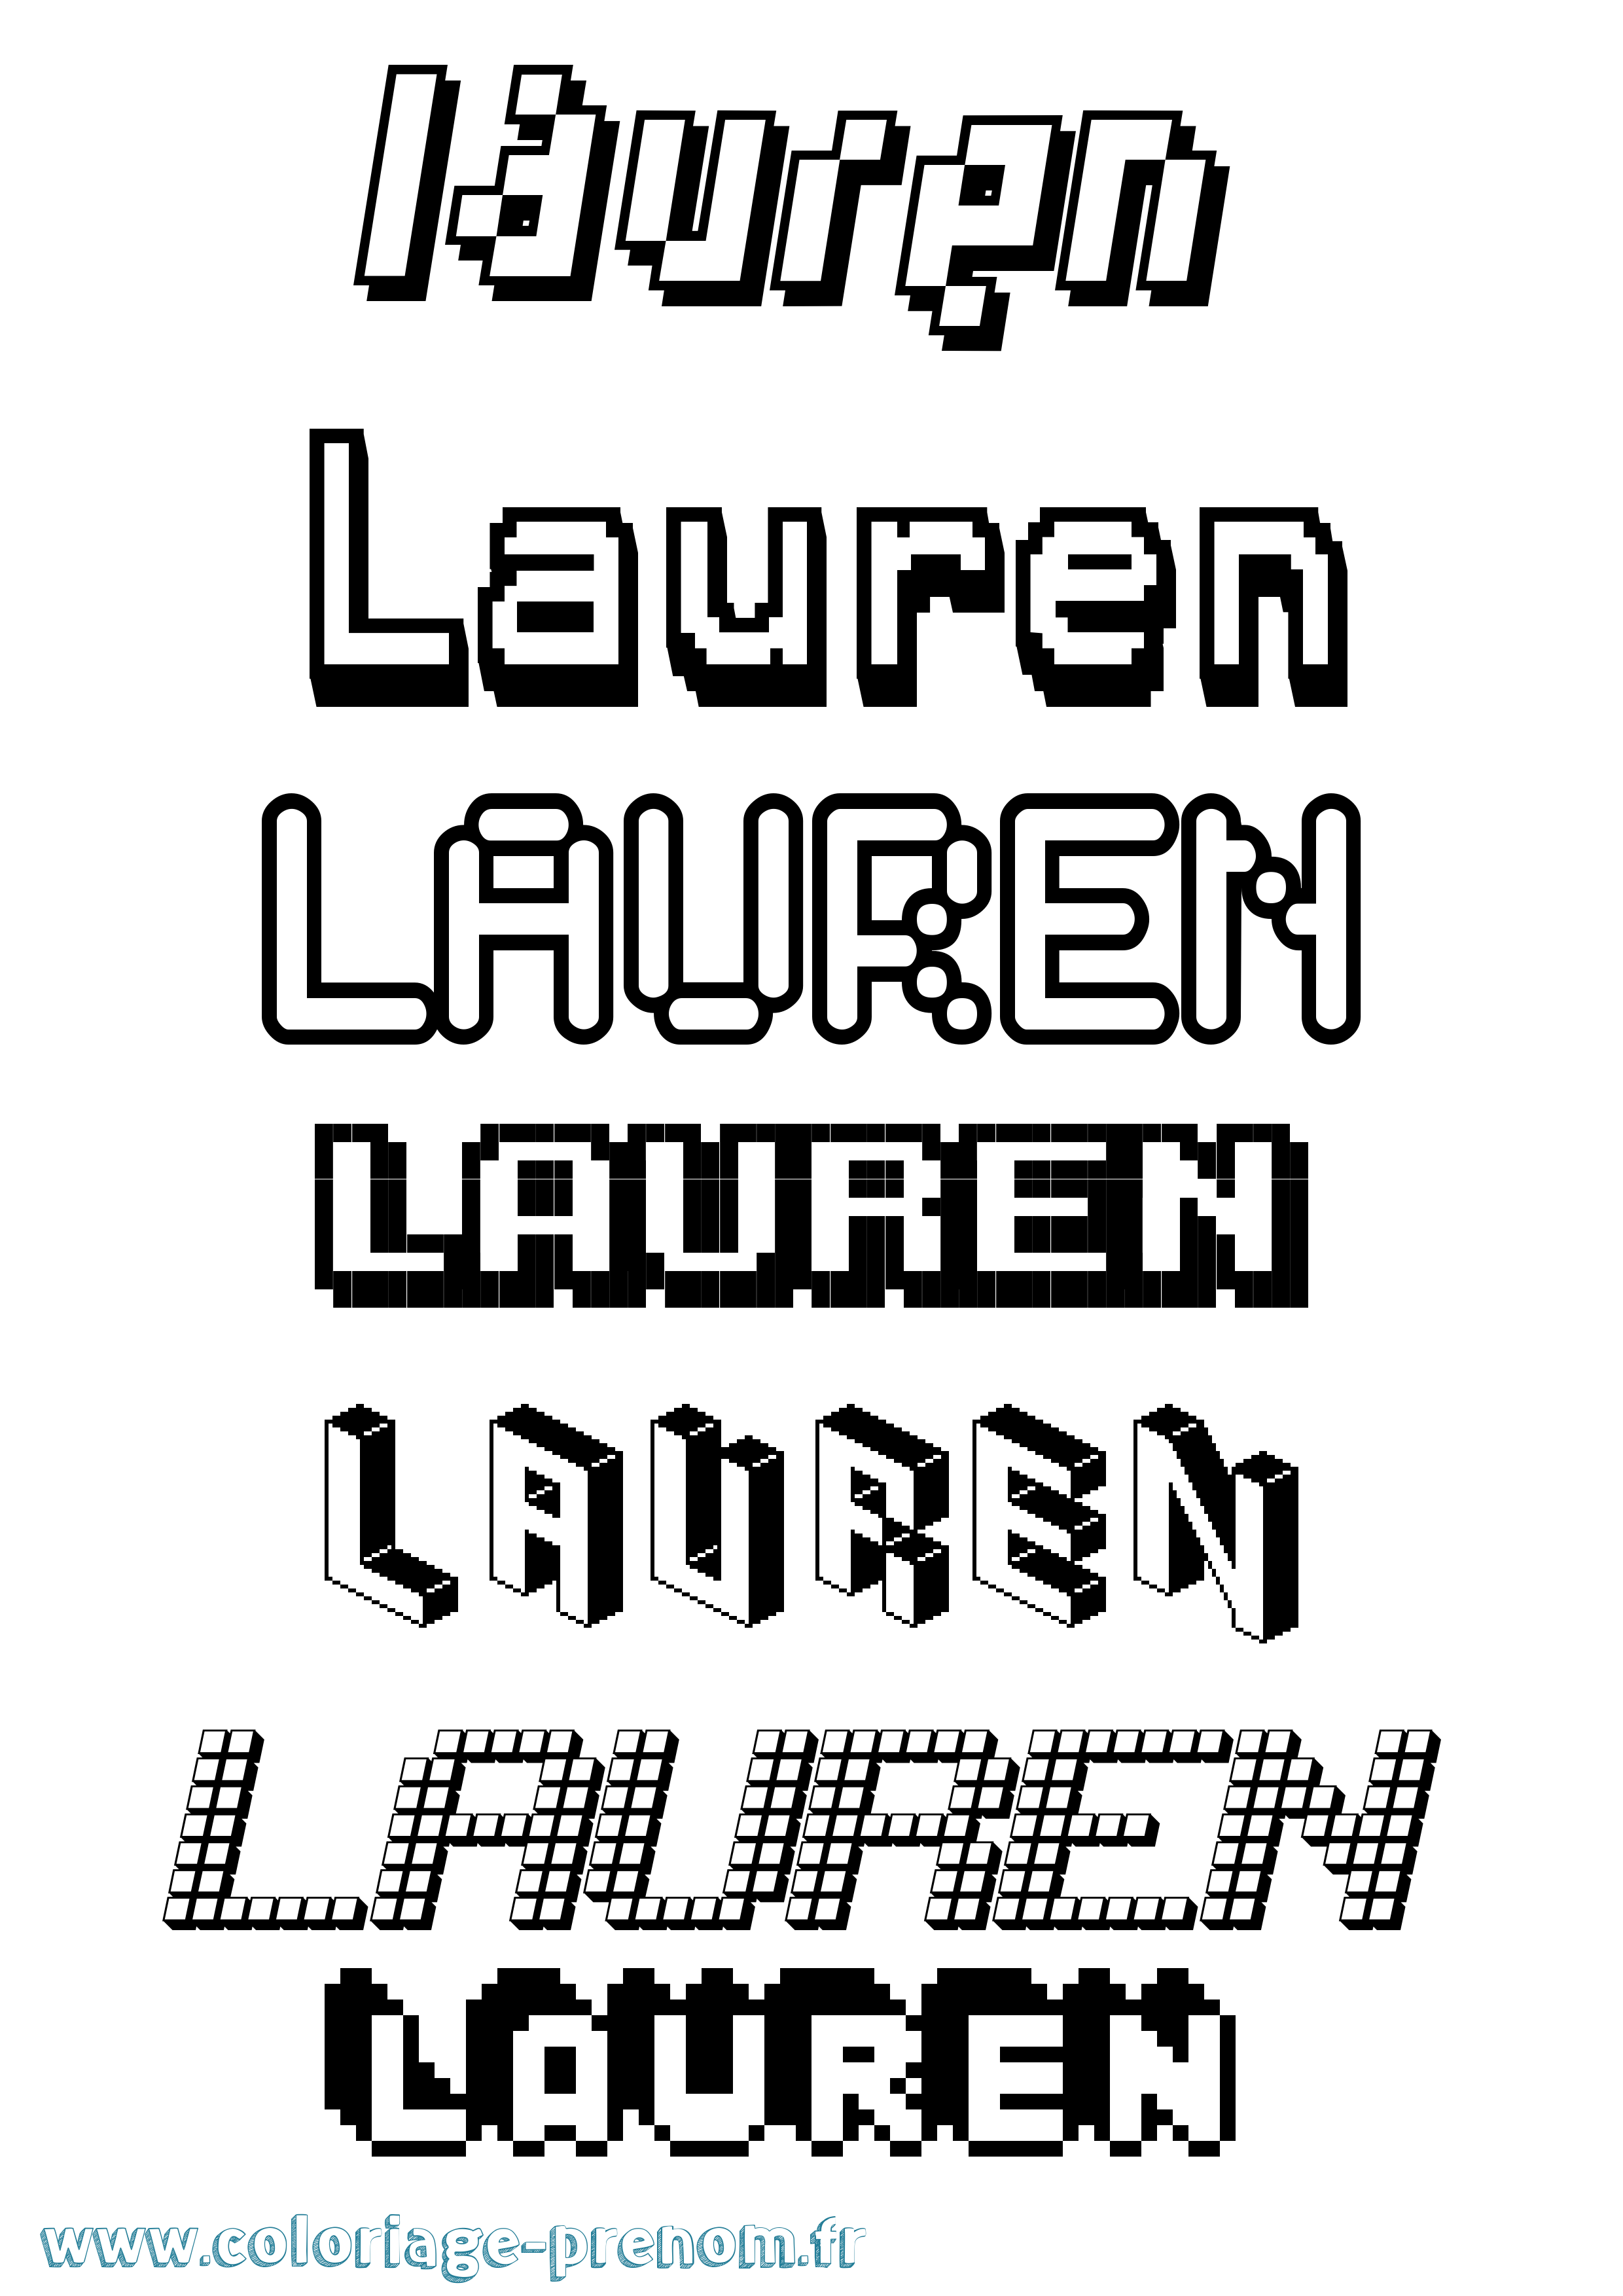 Coloriage prénom Lauren